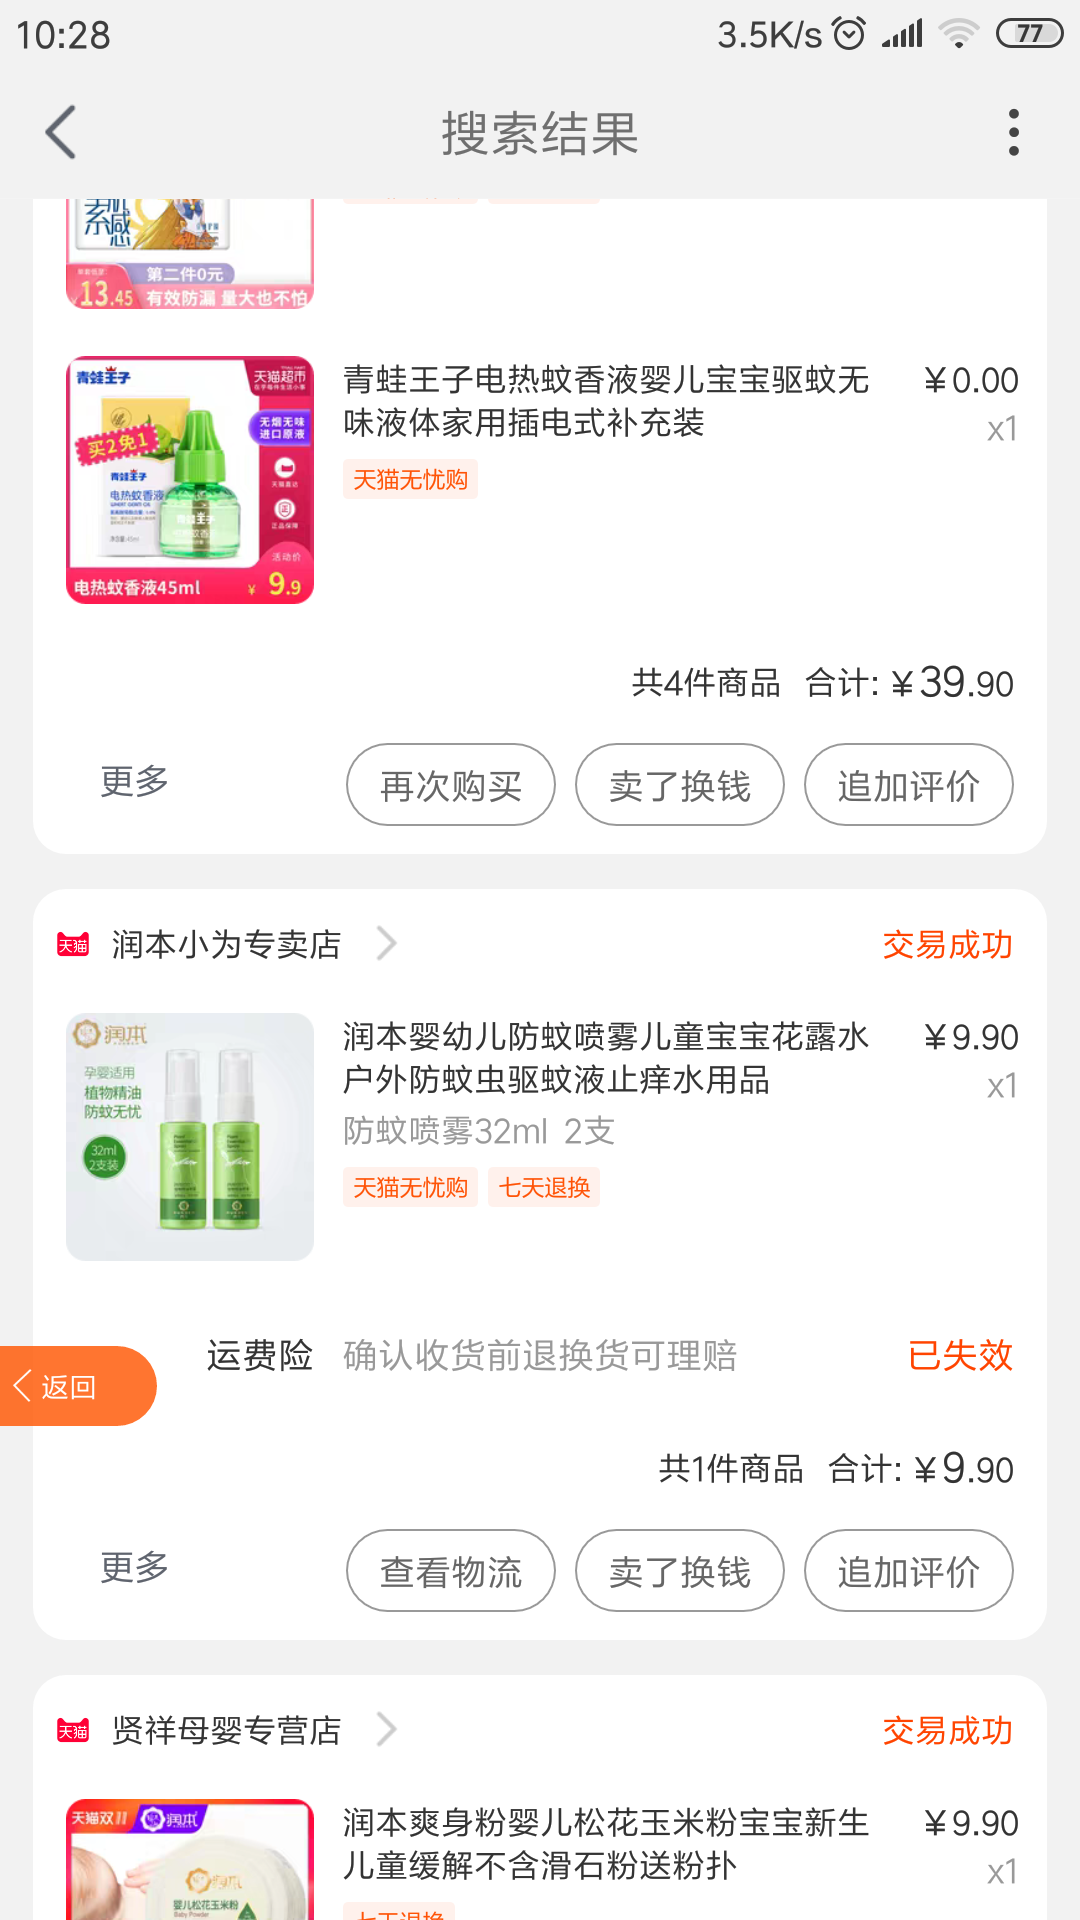 Screenshot_2019-05-10-10-28-17-479_com.taobao.tao.png